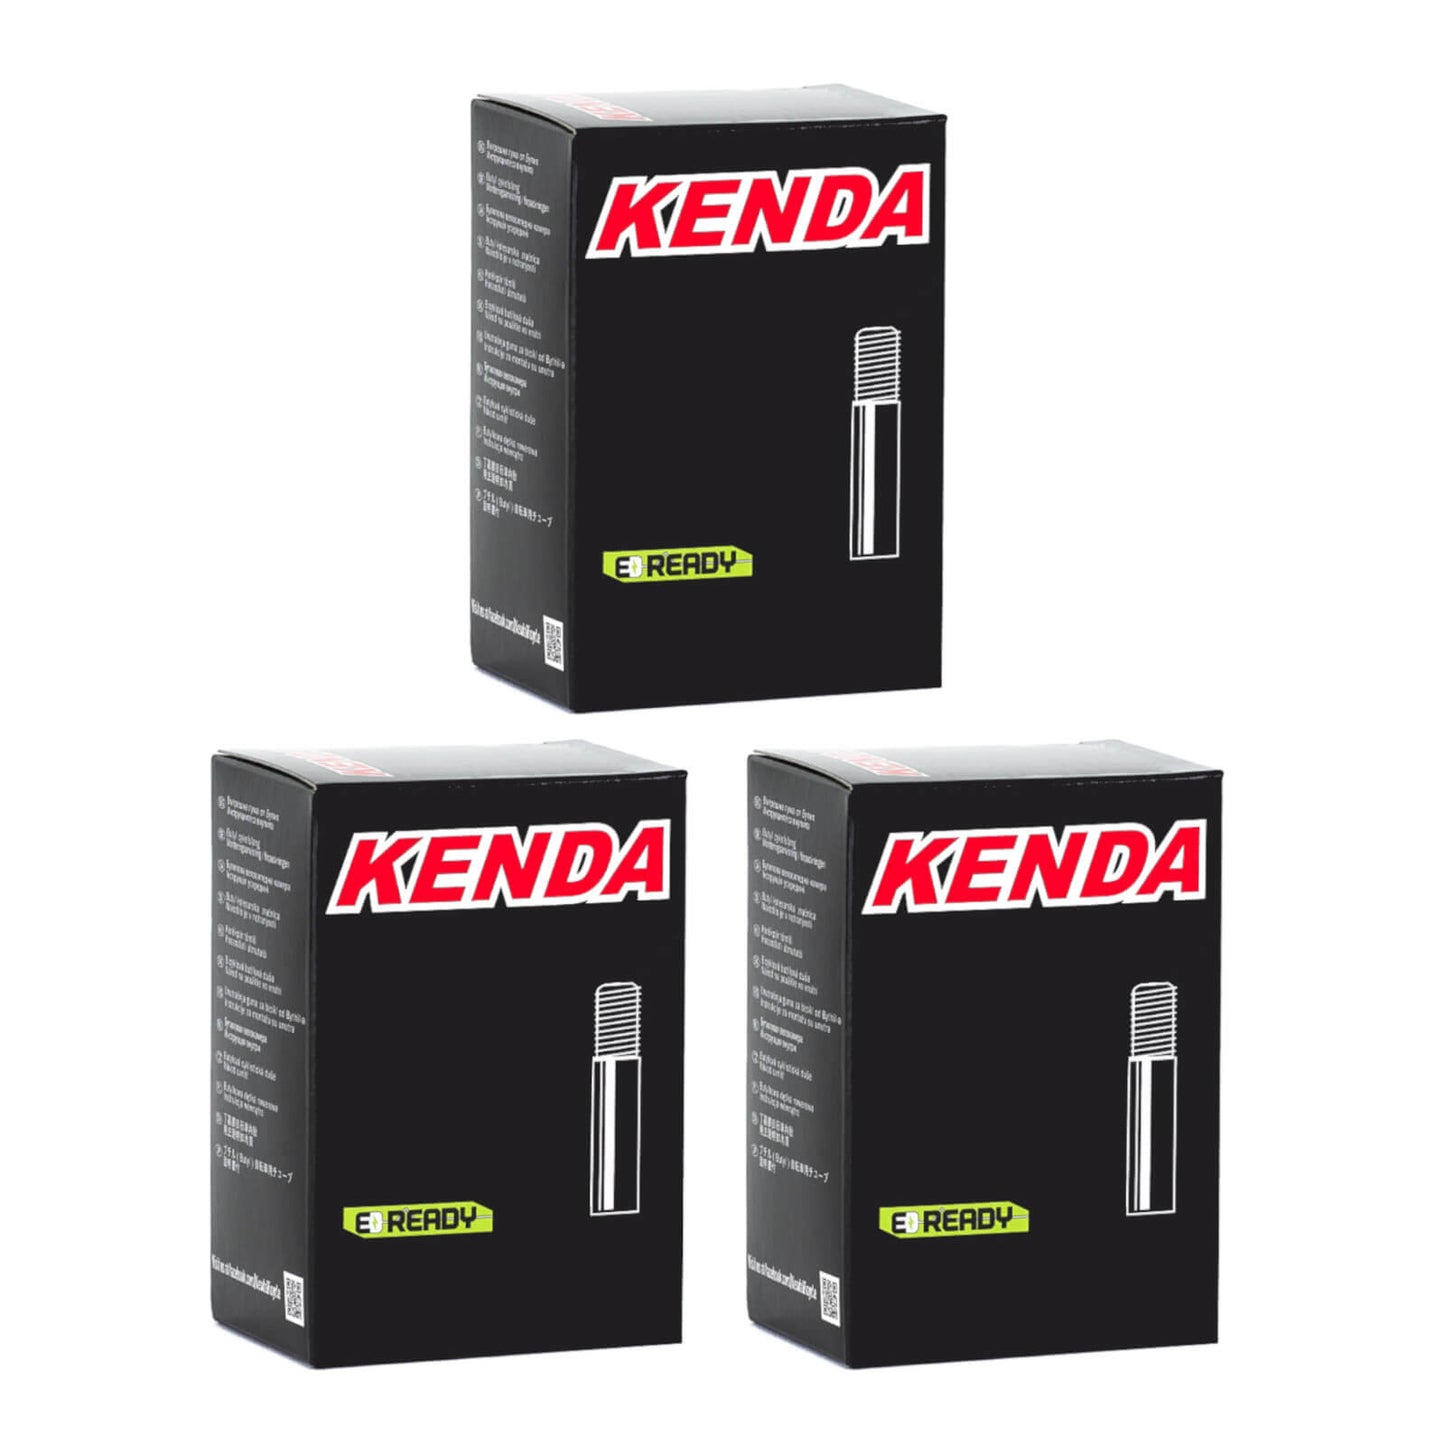 Kenda 26x2.75-3.0" 26 Inch Schrader Valve Bike Inner Tube Pack of 3